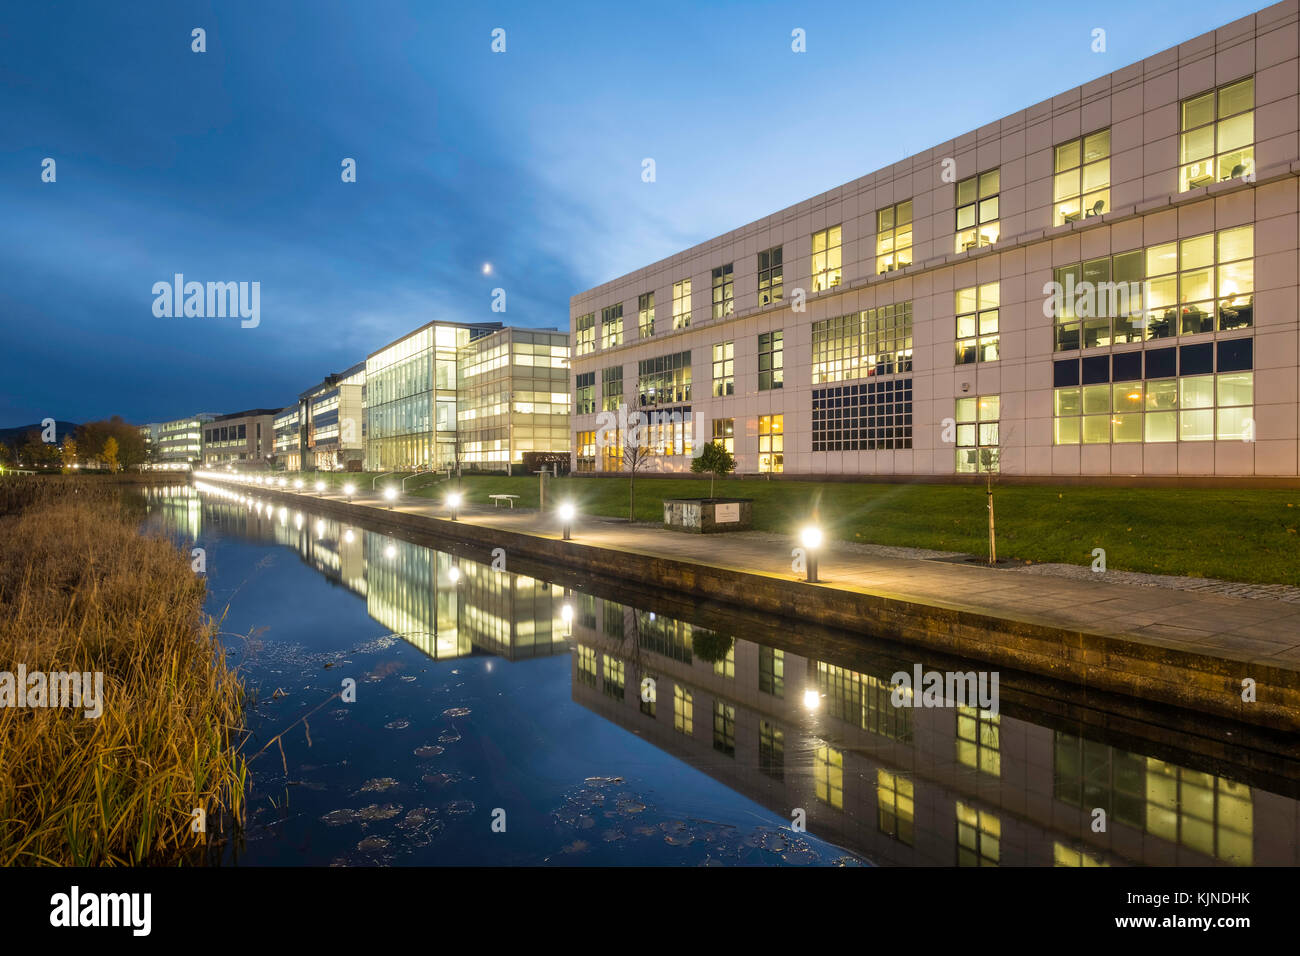 Nachtansicht des modernen Business District in Edinburgh Park Entwicklung in Edinburgh, Schottland, Vereinigtes Königreich Stockfoto